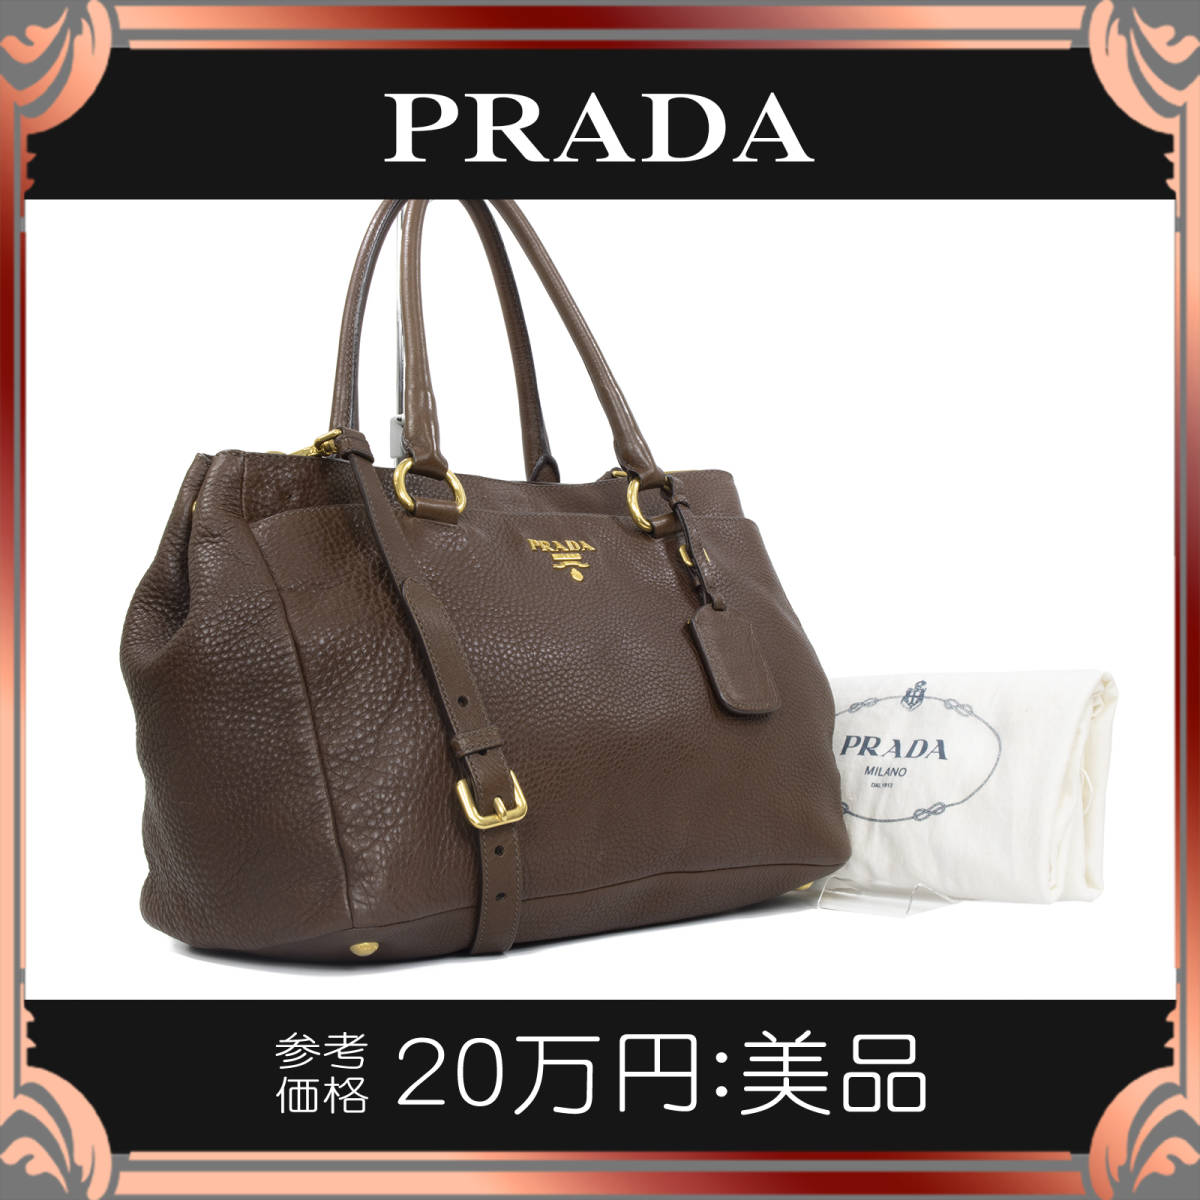 【全額返金保証・送料無料】PRADA/プラダの2wayバッグ・トートバッグ・正規品・美品・女性・本革・A4対応・ダークブラウン・茶色系・鞄